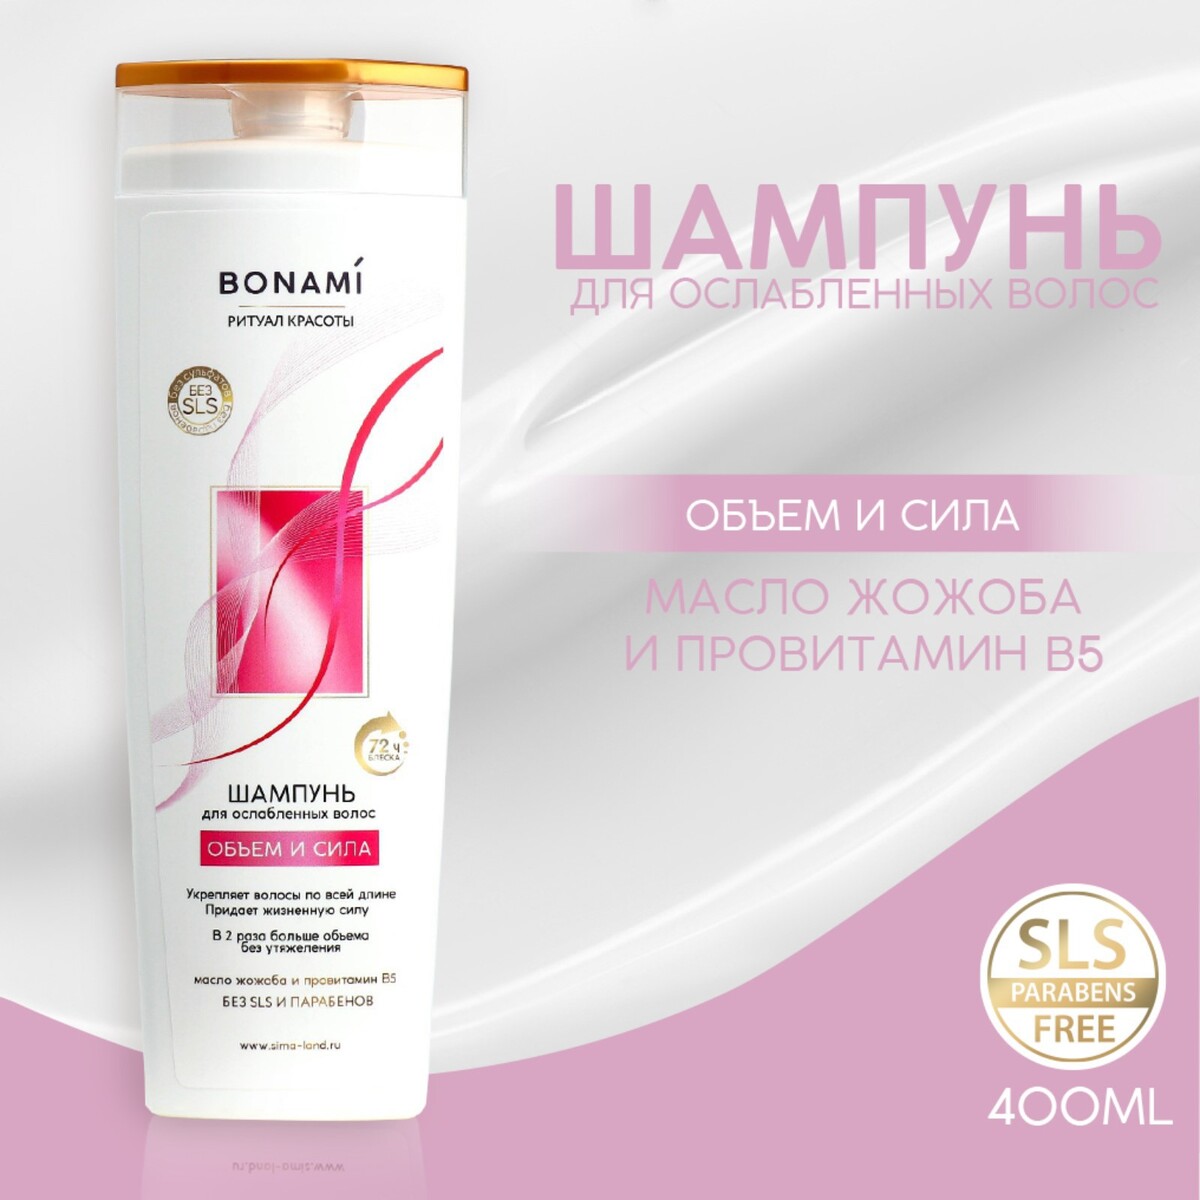 Шампунь для волос с маслом жожоба и провитамином в5, оъем и сила, 400 мл, bonami филлер д волос сила гиалурона